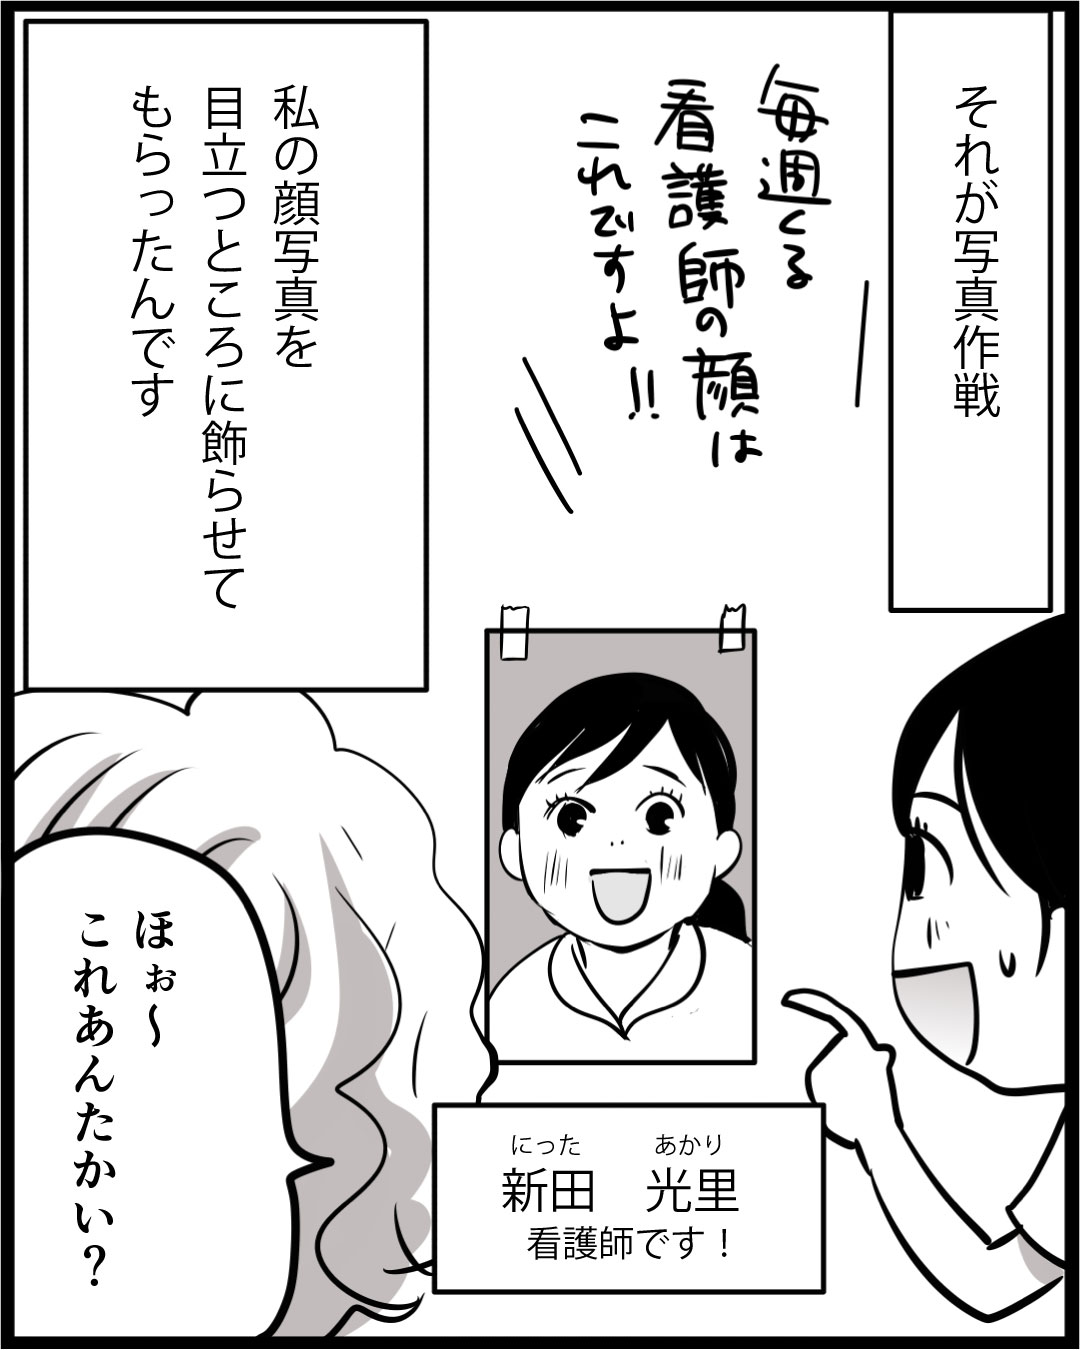 漫画「100年ぶりに入浴したU子さん」8rev